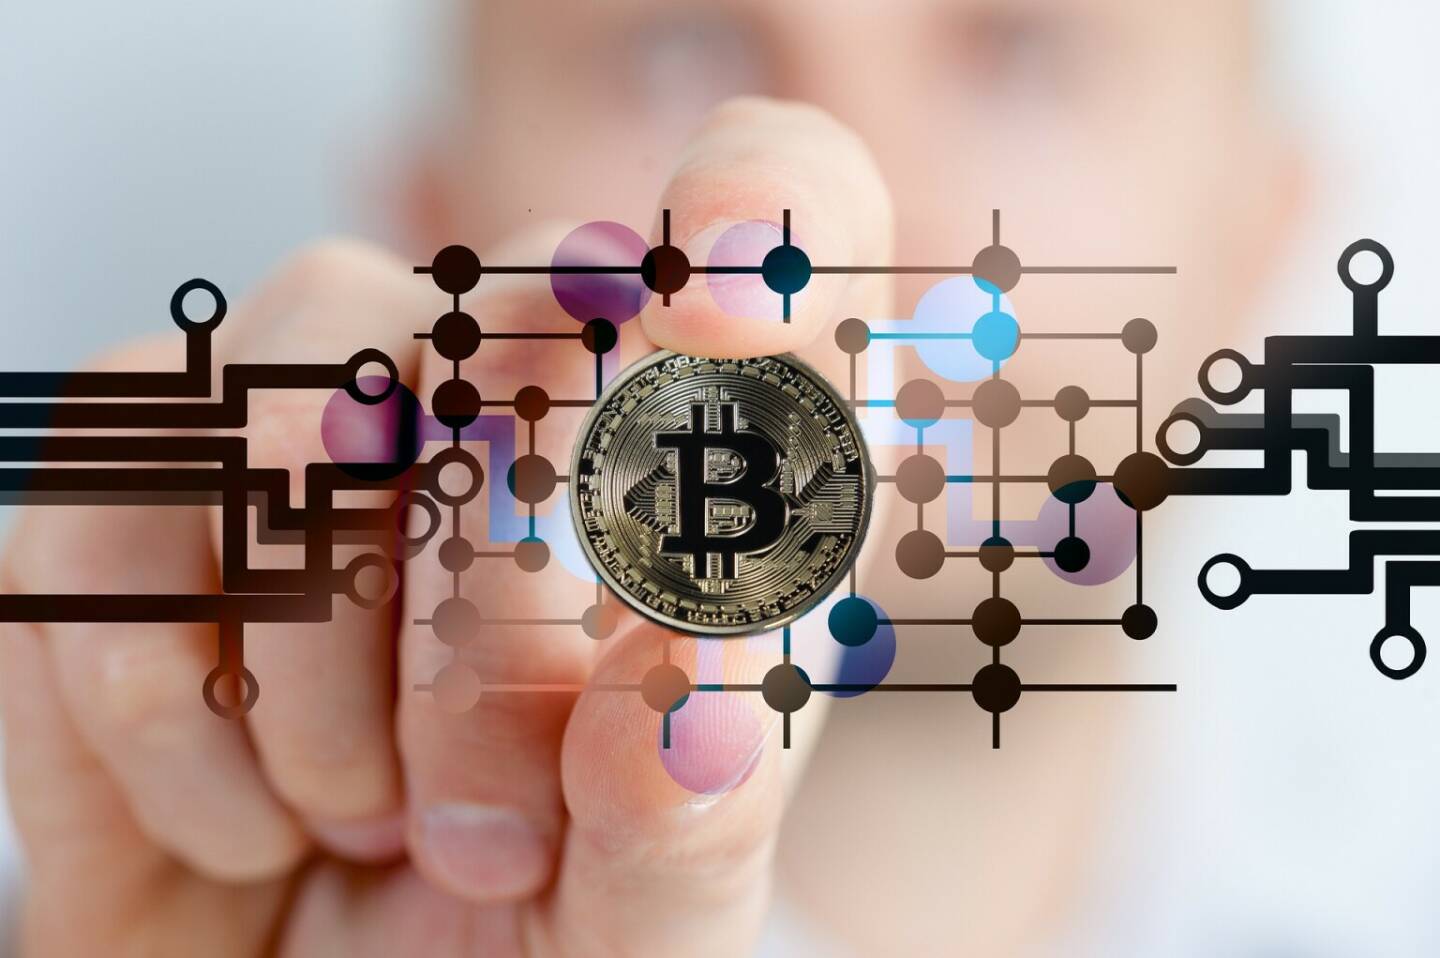 Bitcoin, Kryptowährung - https://pixabay.com/de/photos/bitcoin-kryptowährung-währung-2643159/